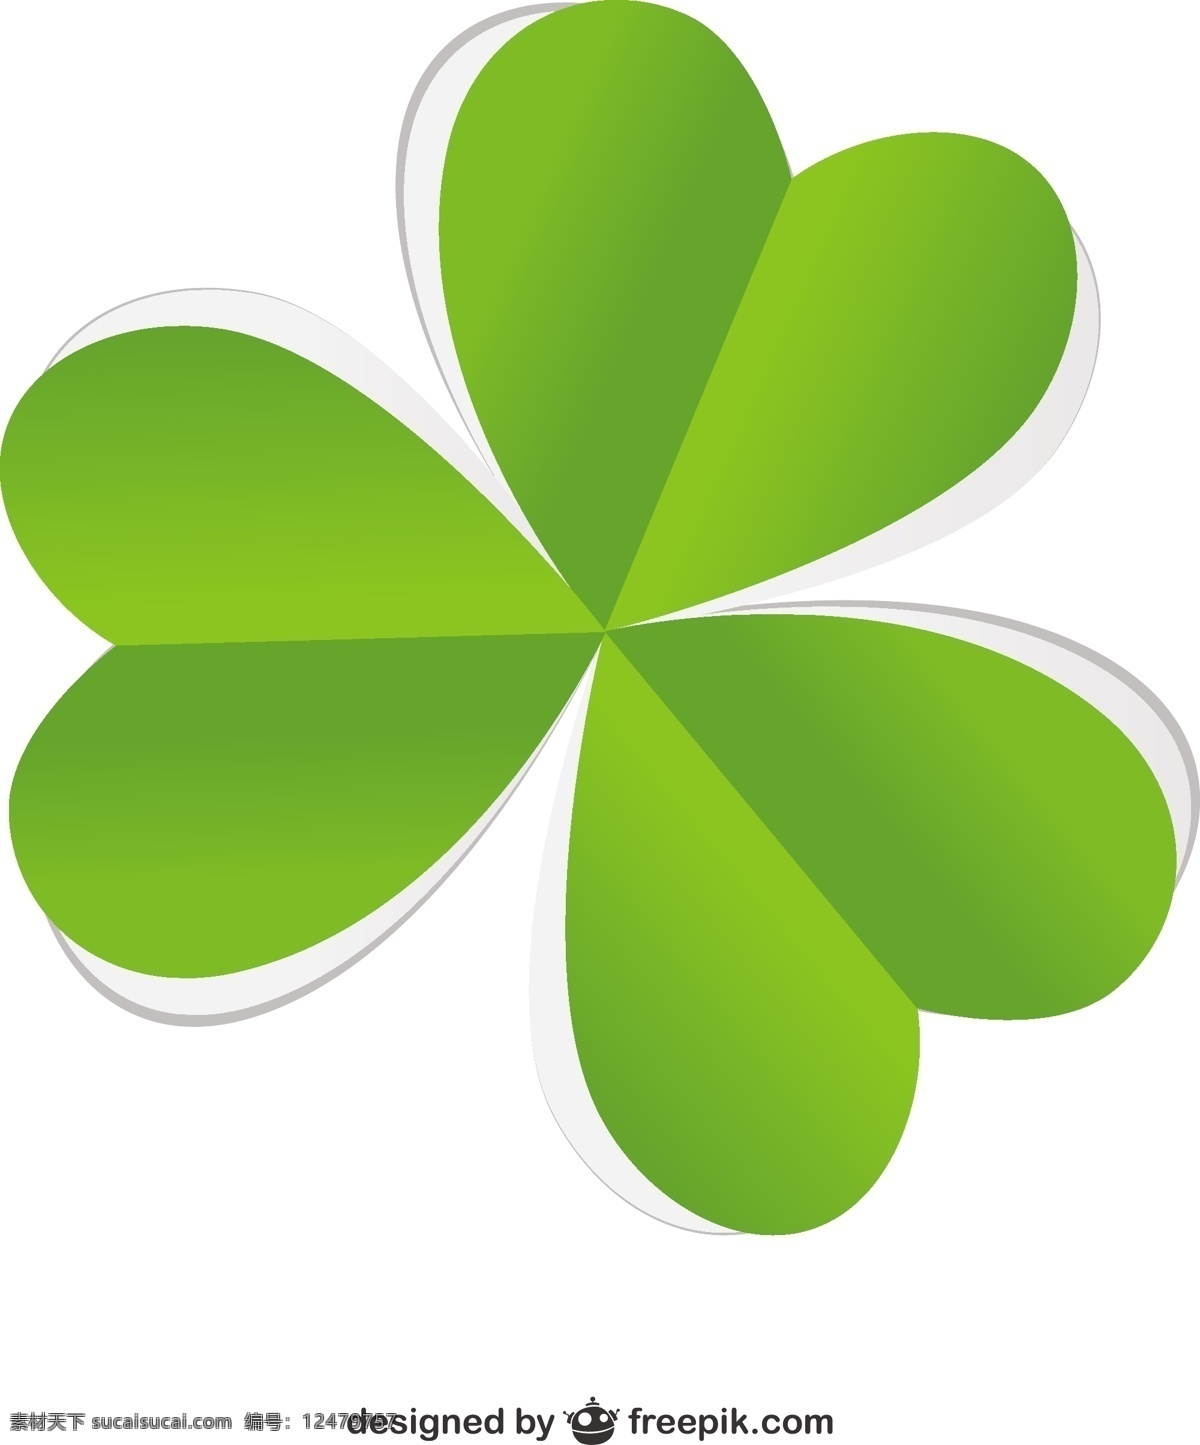 三叶草 图案 背景 绿色 假日 st 帕特里克 爱尔兰 幸运的是 圣帕特里克 运气 传统